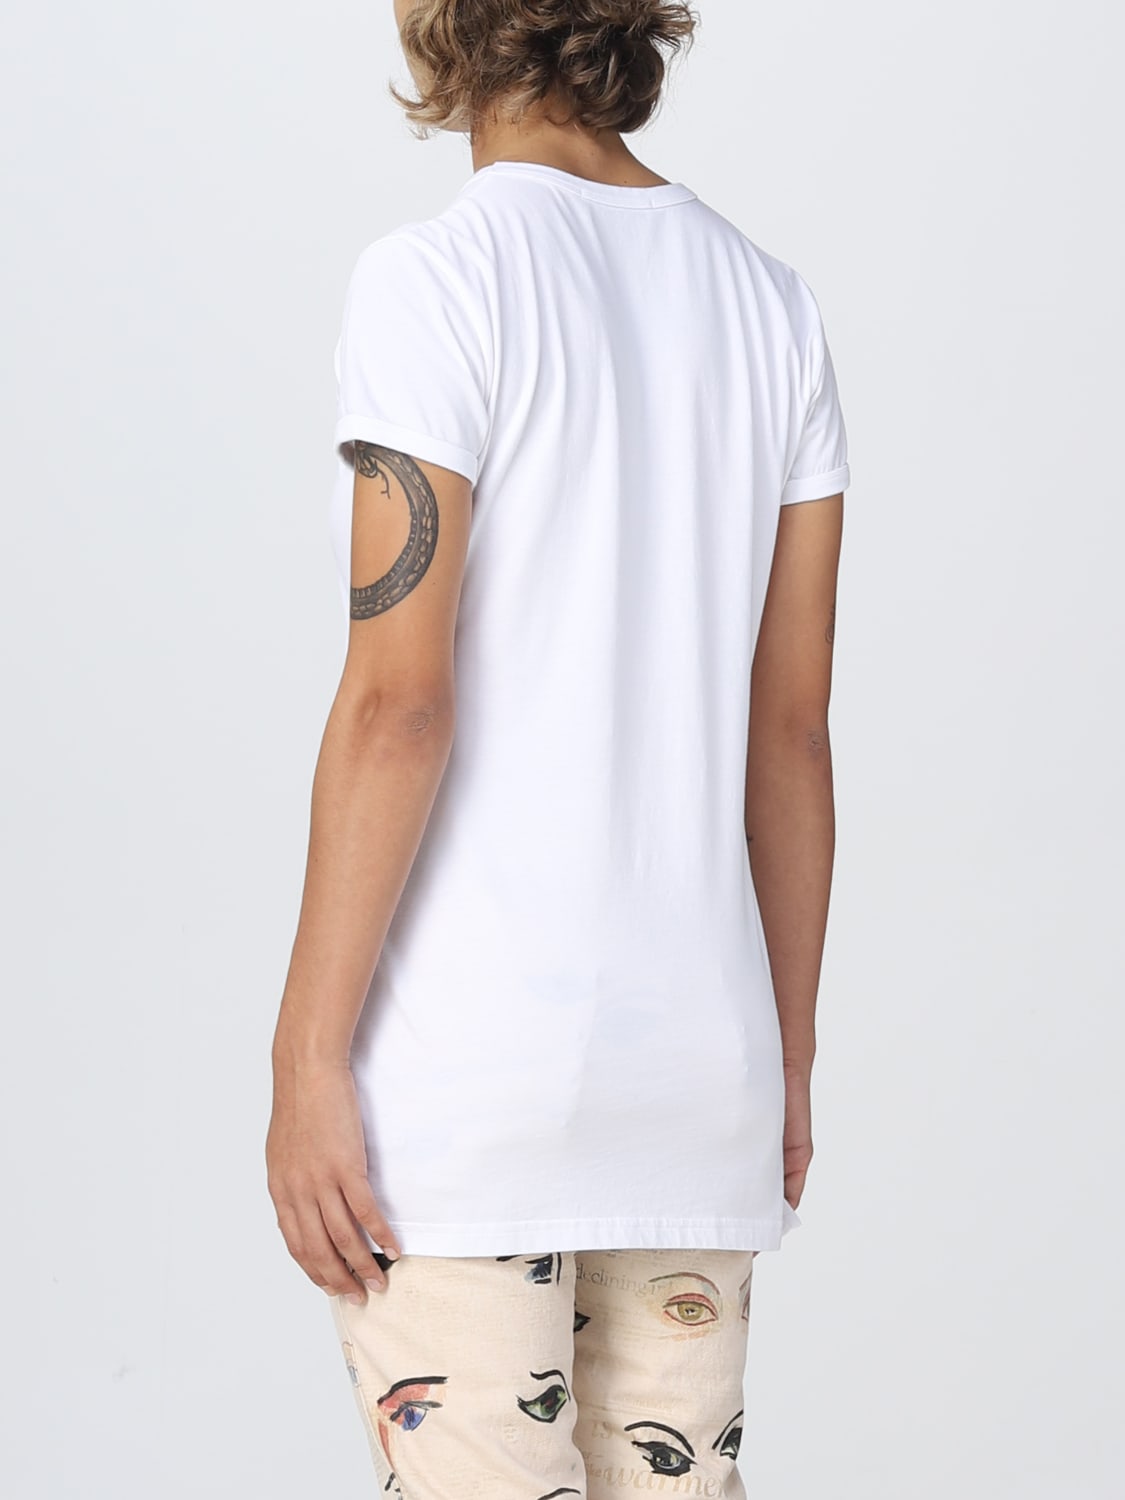 Vivienne Westwoodアウトレット：Tシャツ レディース - ホワイト